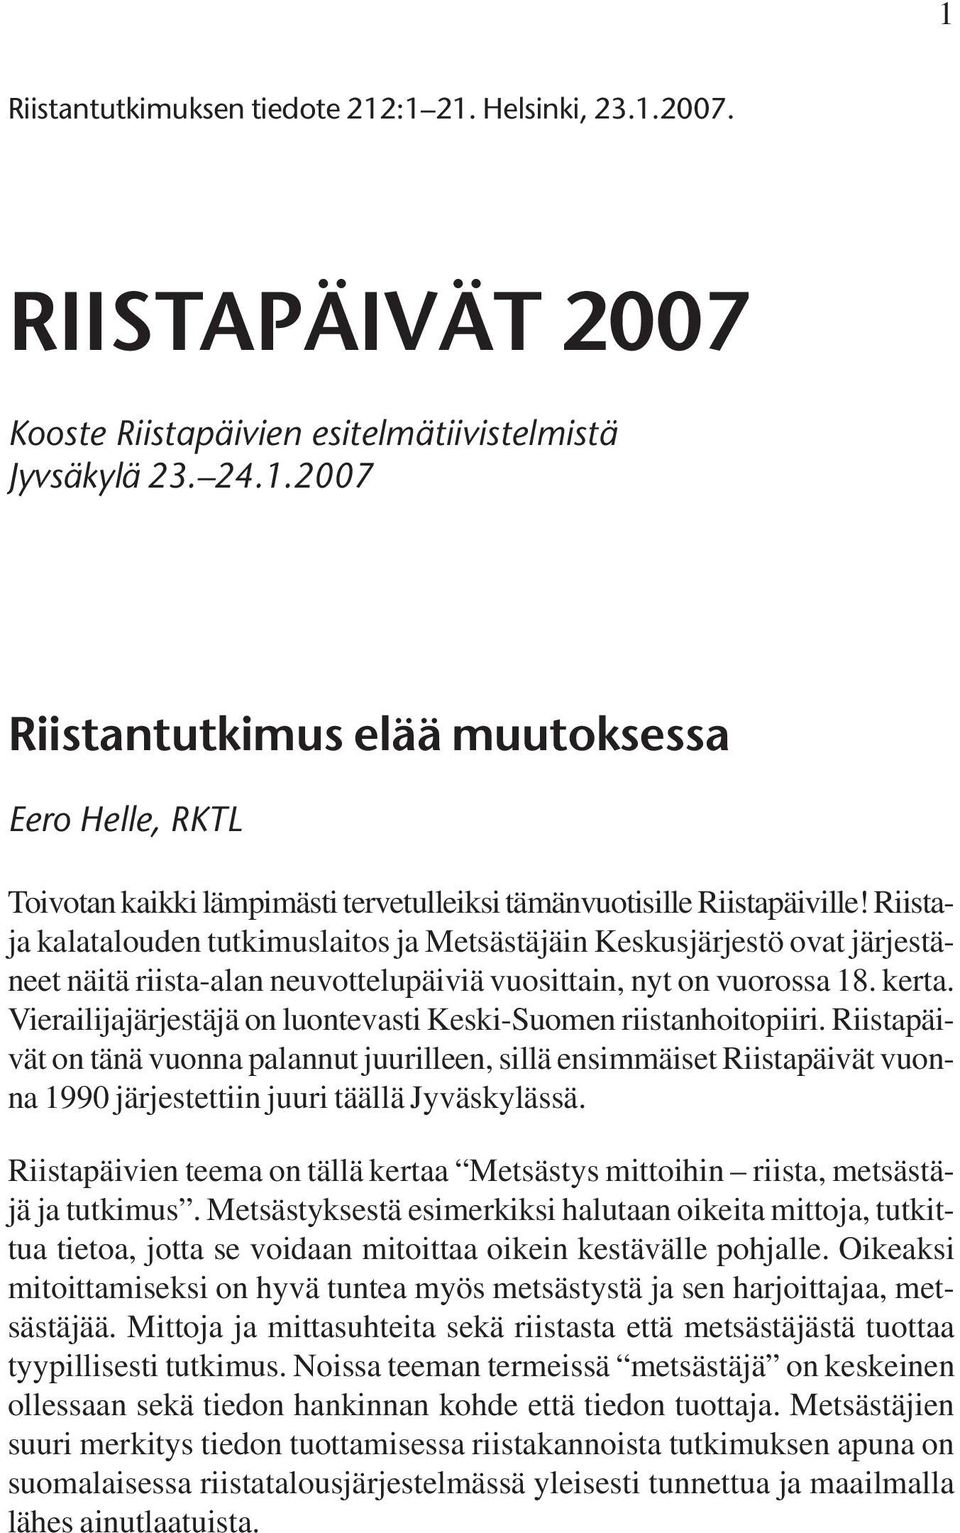 Vierailijajärjestäjä on luontevasti Keski-Suomen riistanhoitopiiri. Riistapäivät on tänä vuonna palannut juurilleen, sillä ensimmäiset Riistapäivät vuonna 1990 järjestettiin juuri täällä Jyväskylässä.